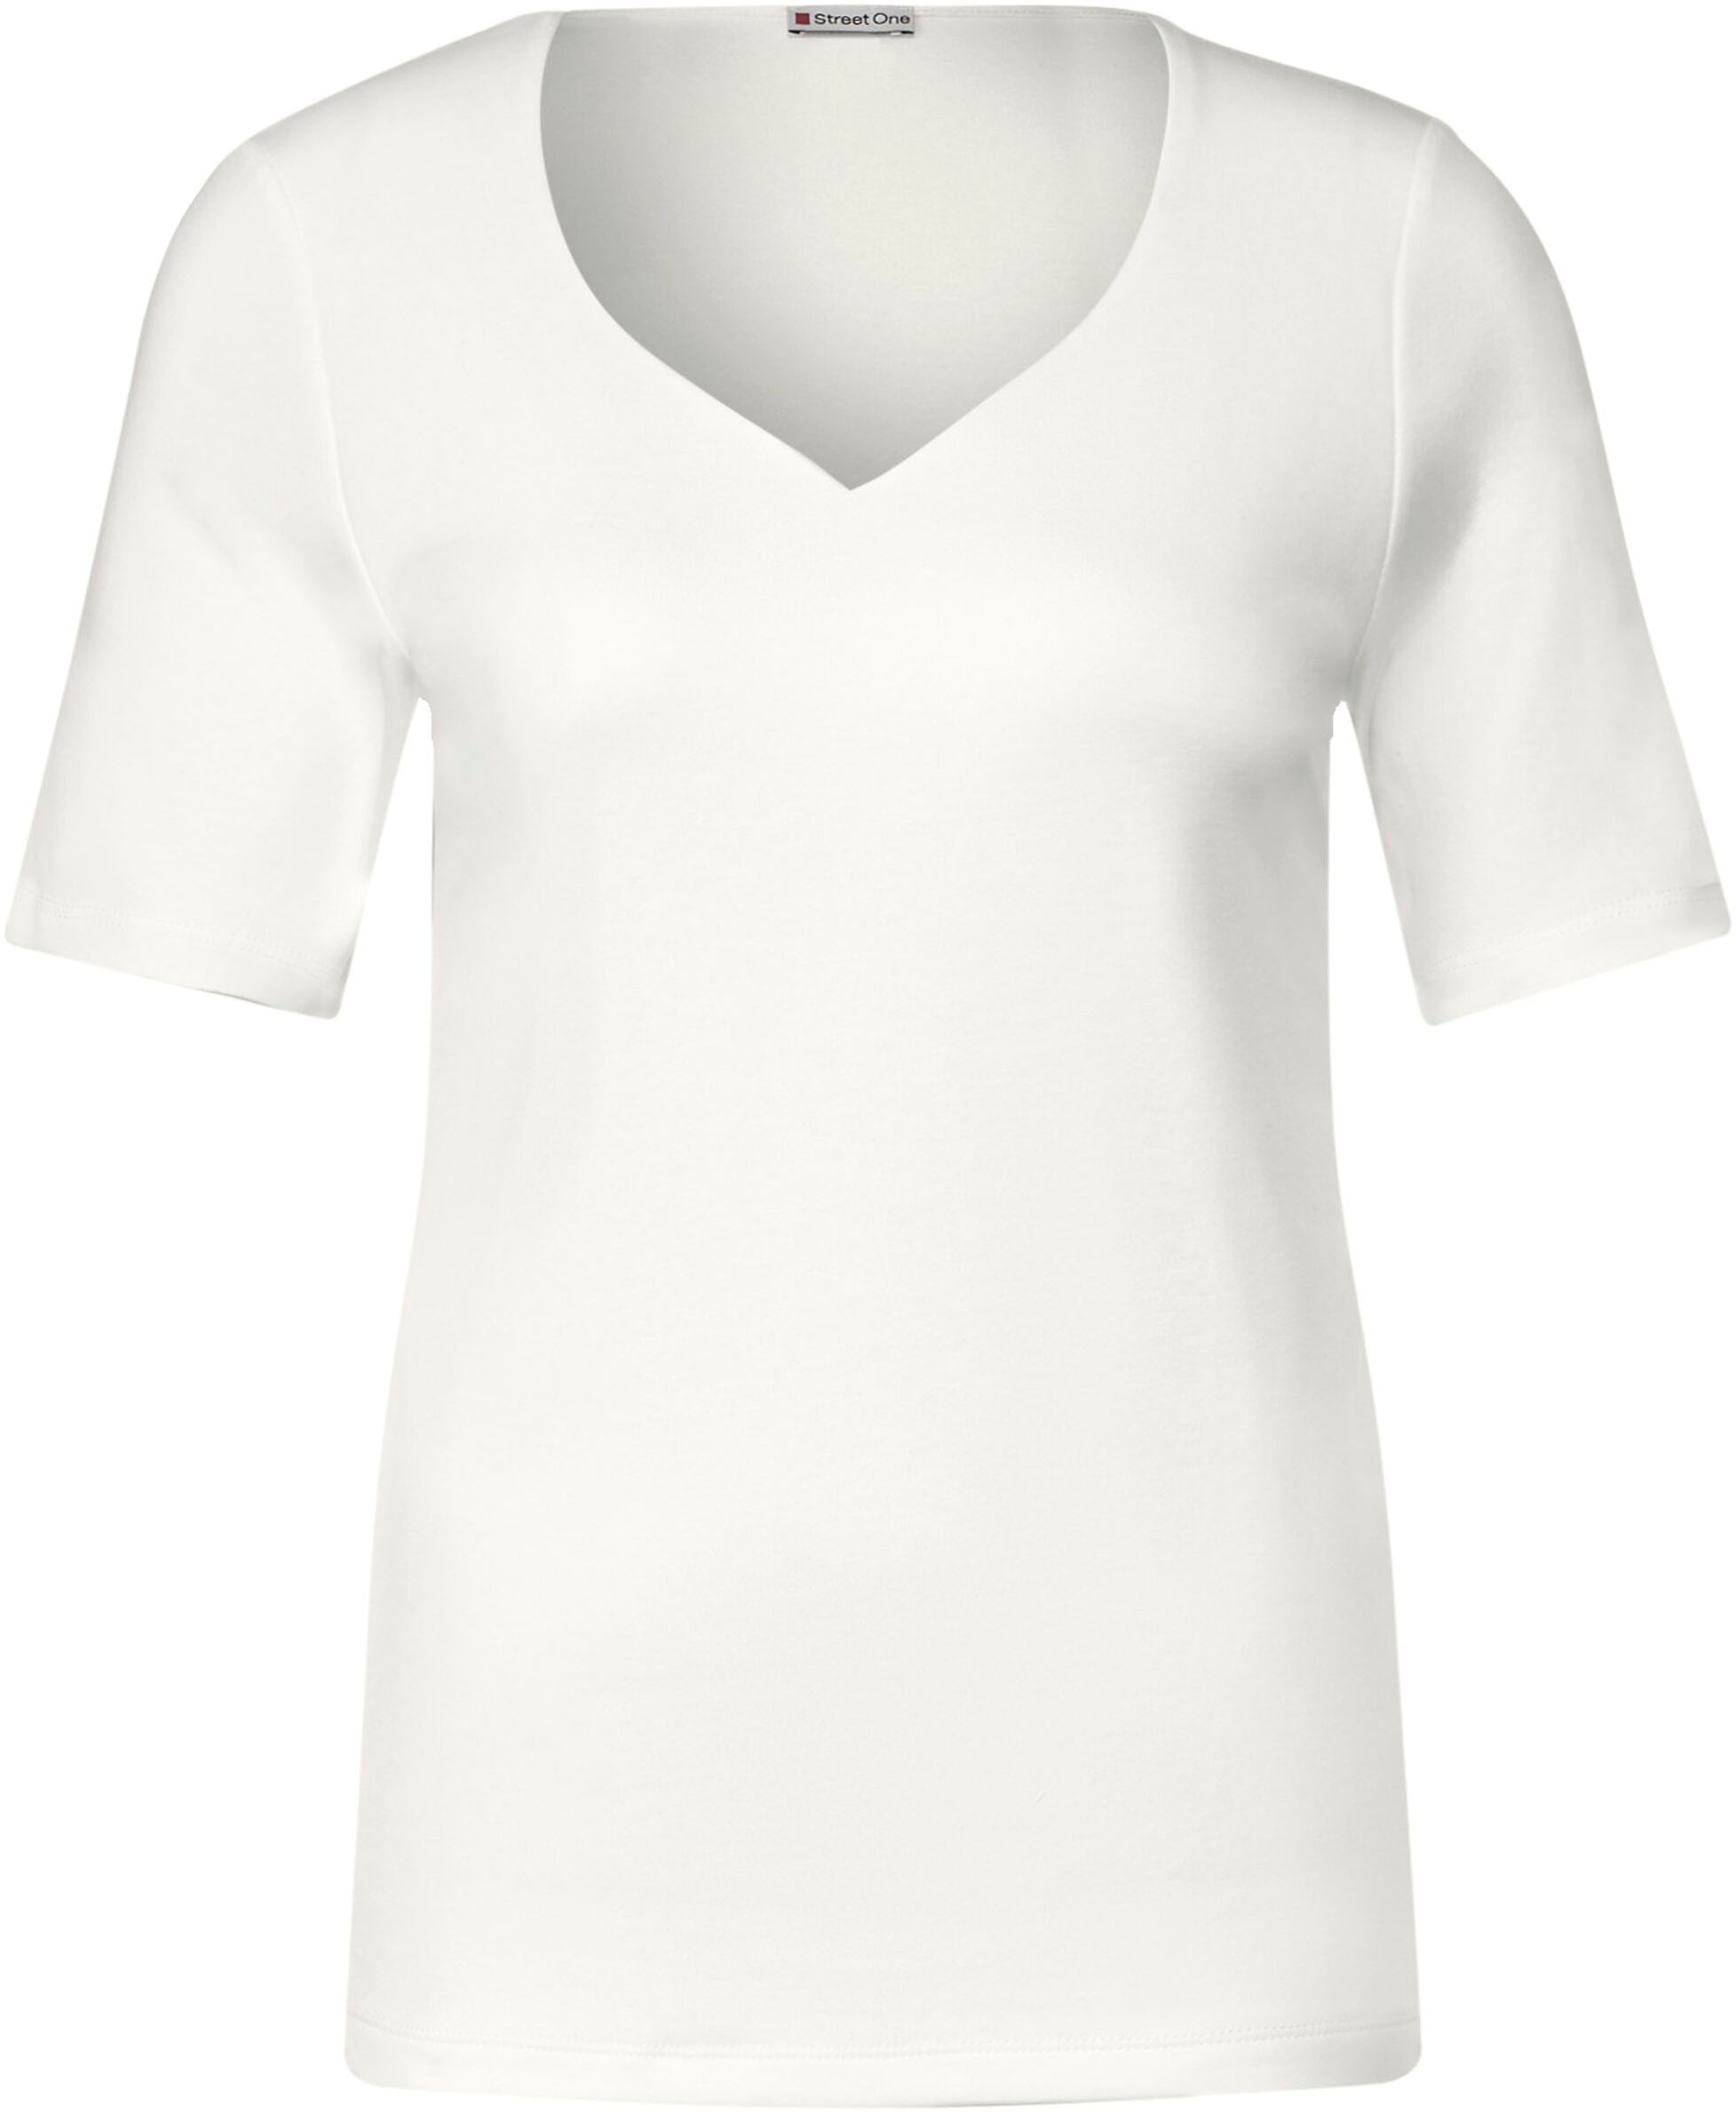 T-Shirt, mit Herz-Ausschnitt ONE kaufen bei STREET online OTTO